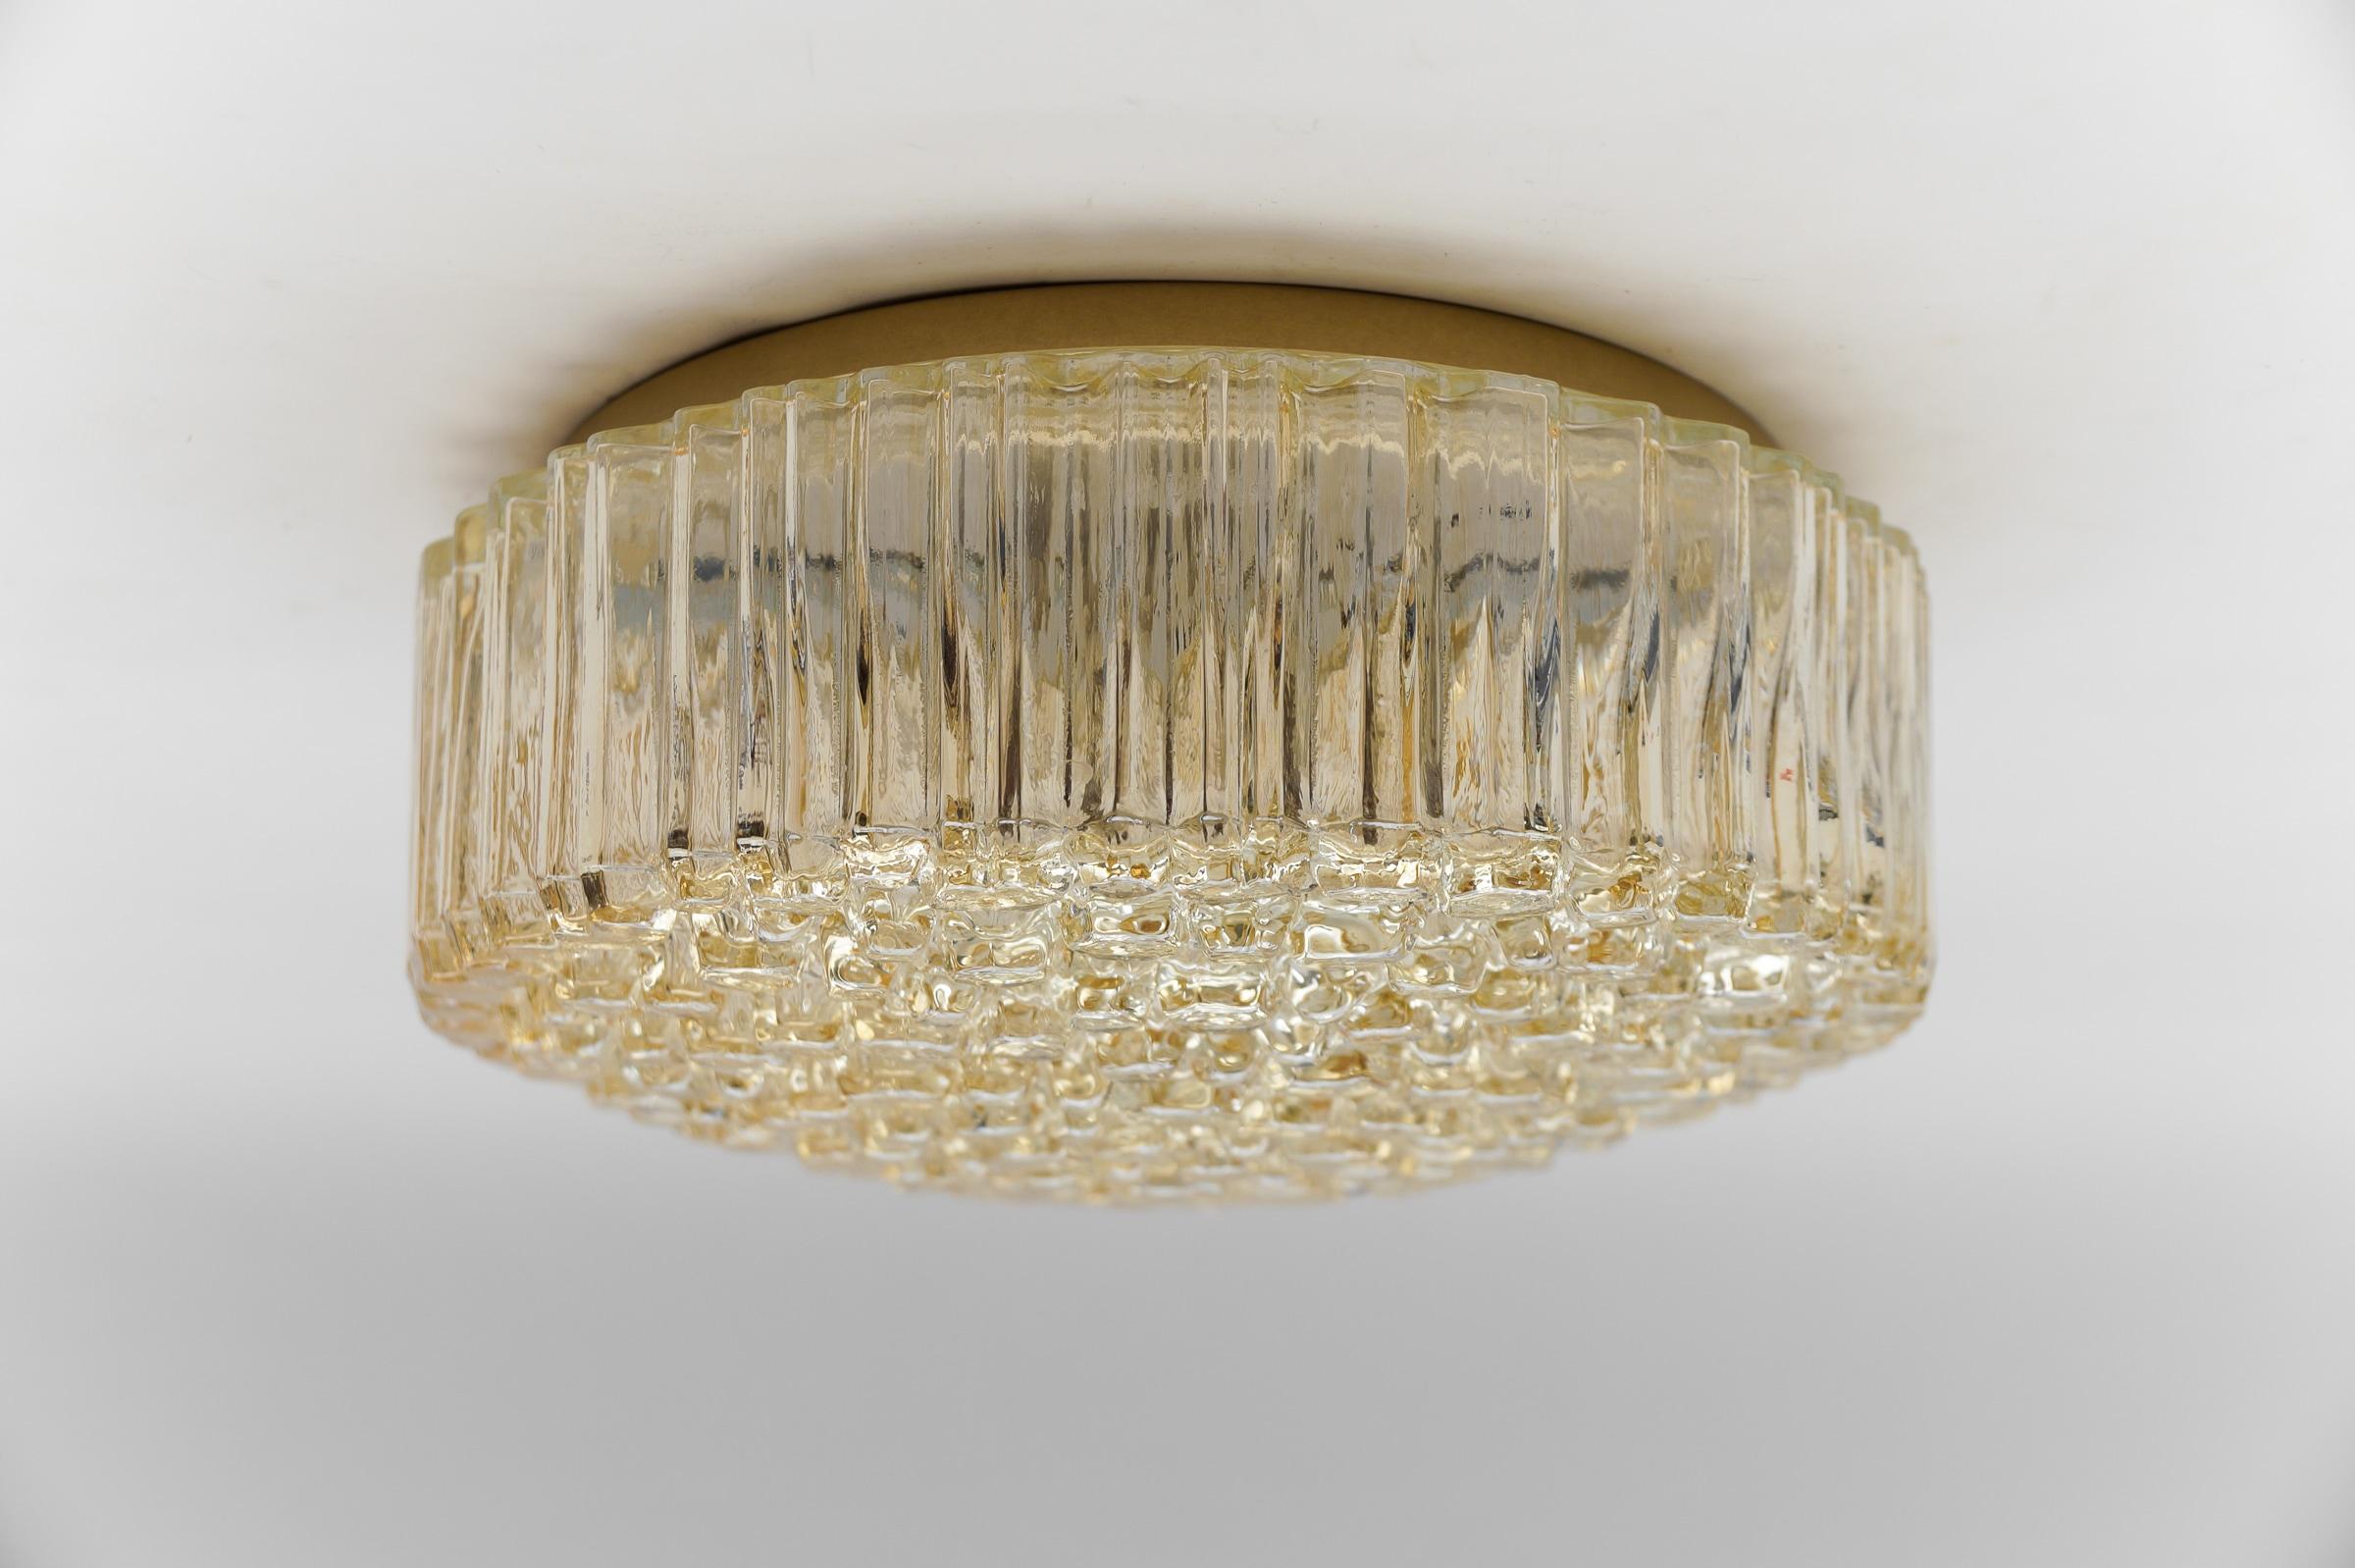 Magnifique grande lampe encastrée en verre bullé ambré par Helena Tynell pour Limburg, Allemagne, années 1960

Chaque luminaire nécessite 1 ampoule standard E27 de 60W max.

Les ampoules ne sont pas incluses. 

Il est possible d'installer ce